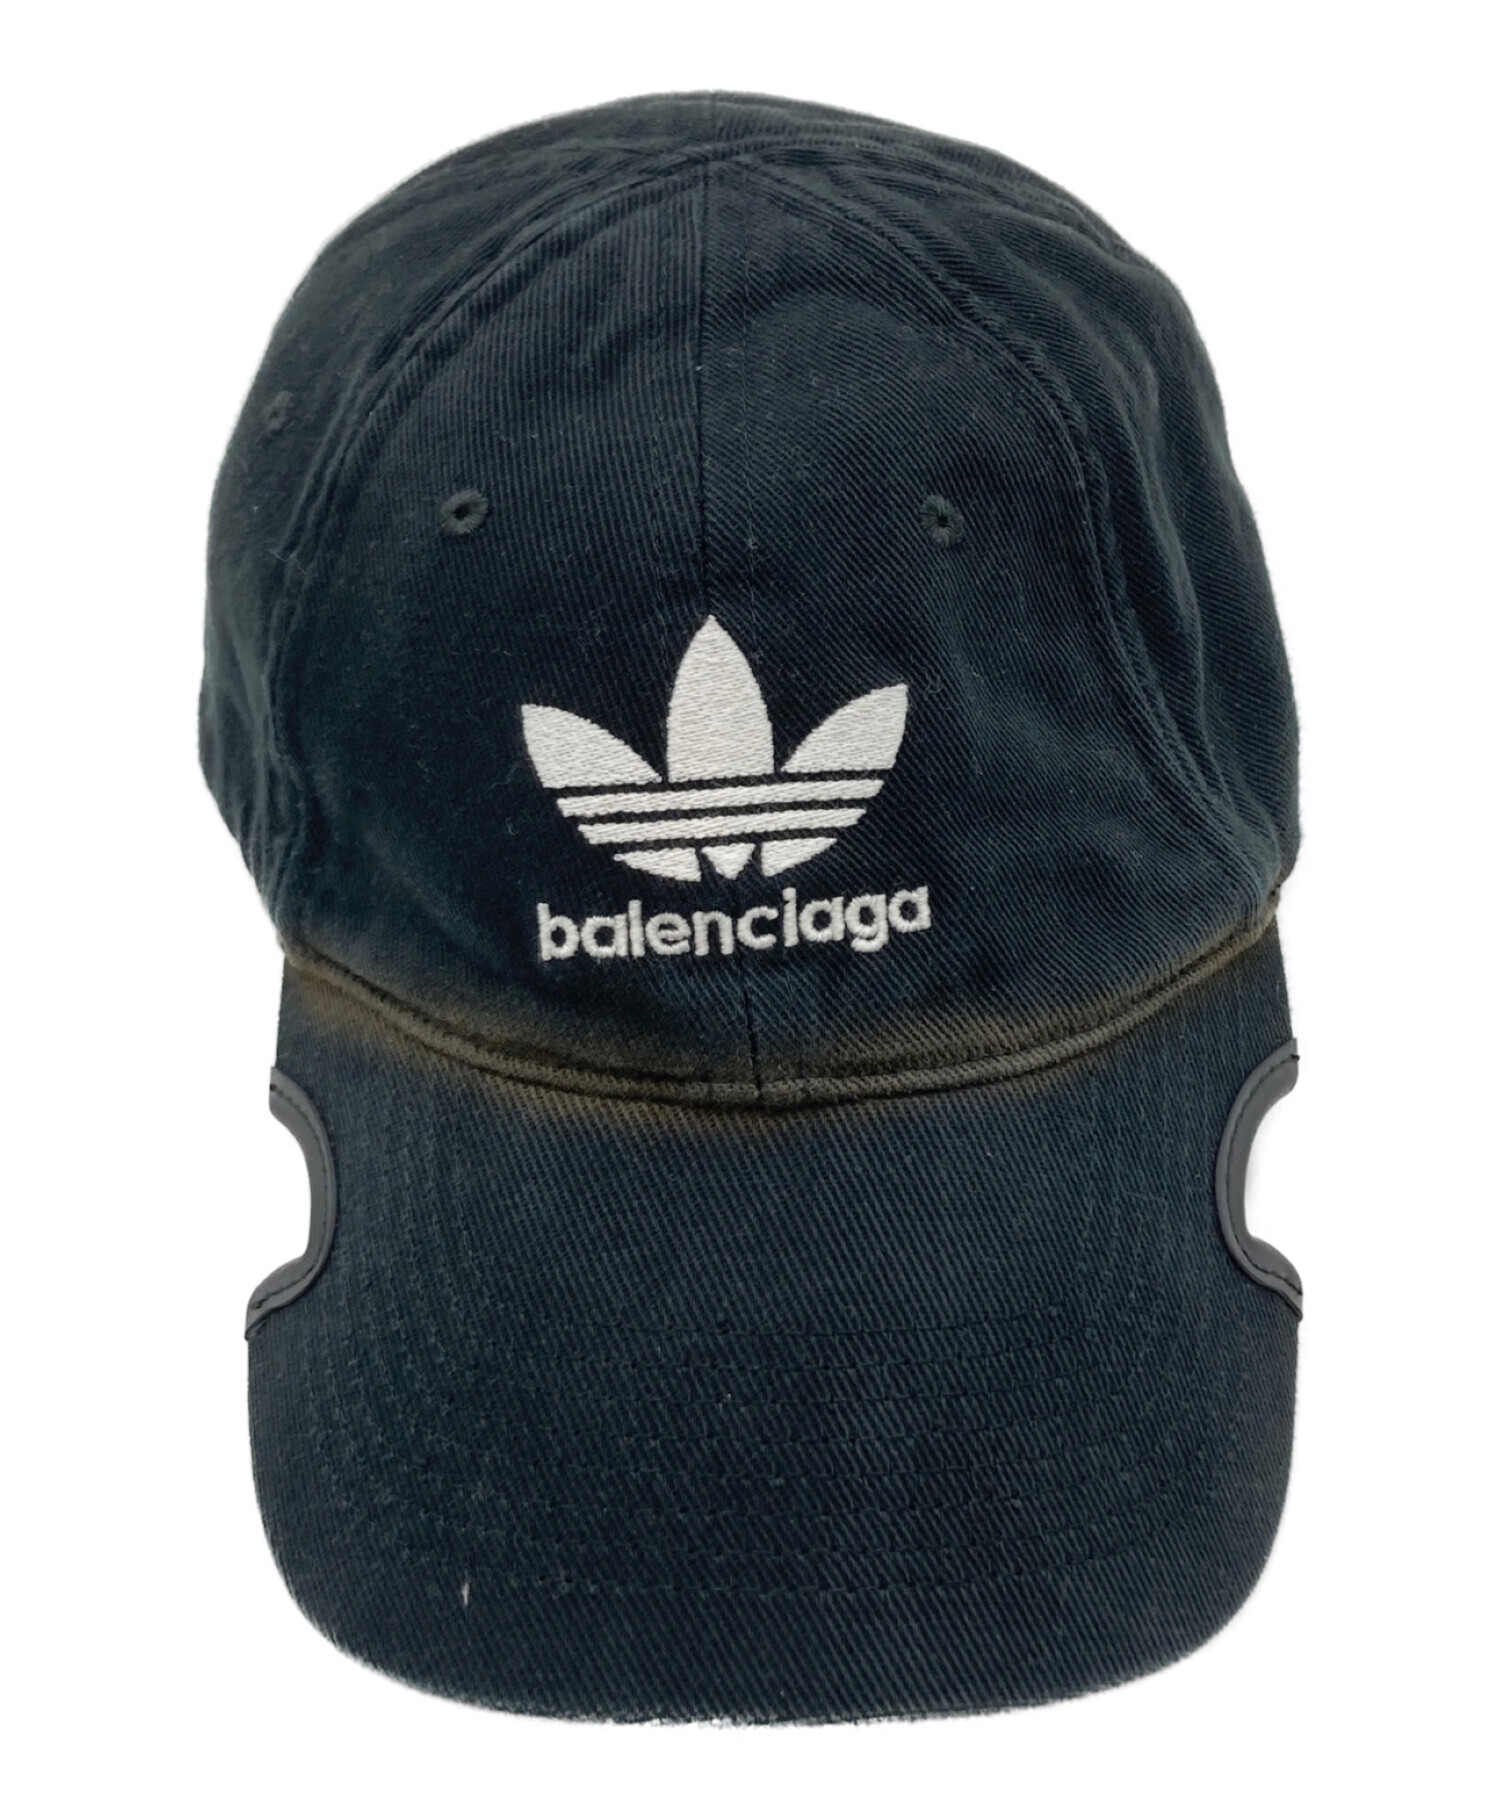 BALENCIAGA (バレンシアガ) adidas (アディダス) コラボロゴユーズド加工キャップ ブラック